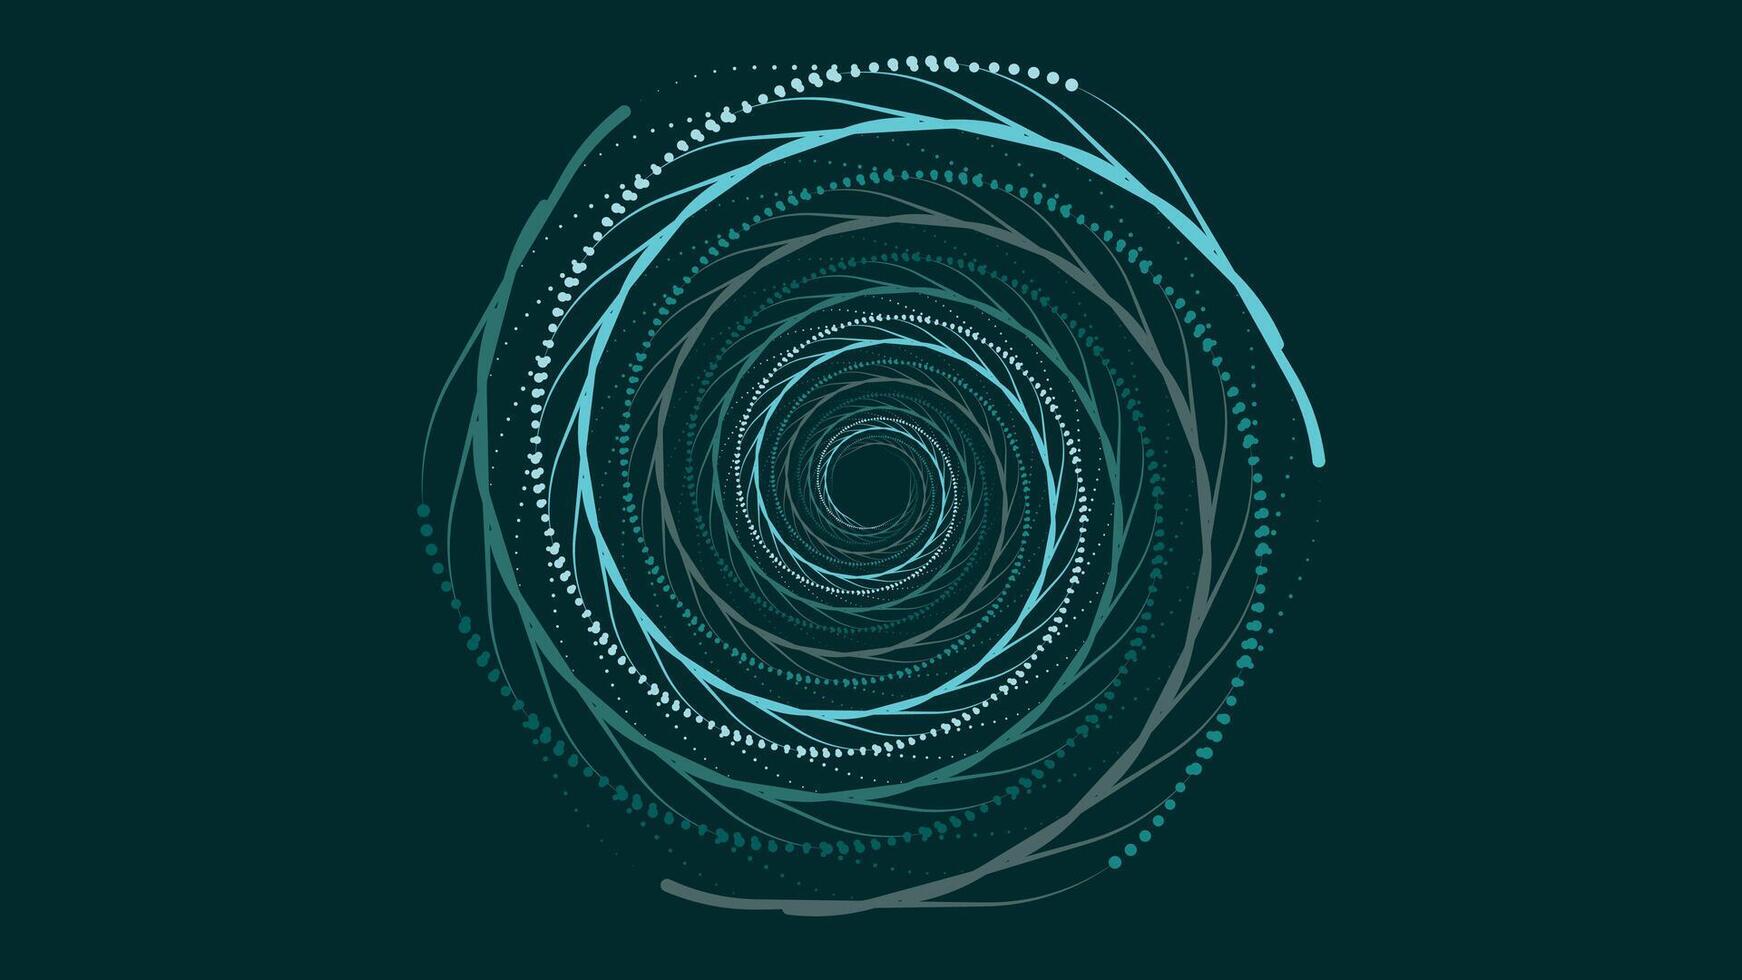 abstrakt spiral prickad brådskande karaktär runda blomma mörk grön bakgrund. vektor